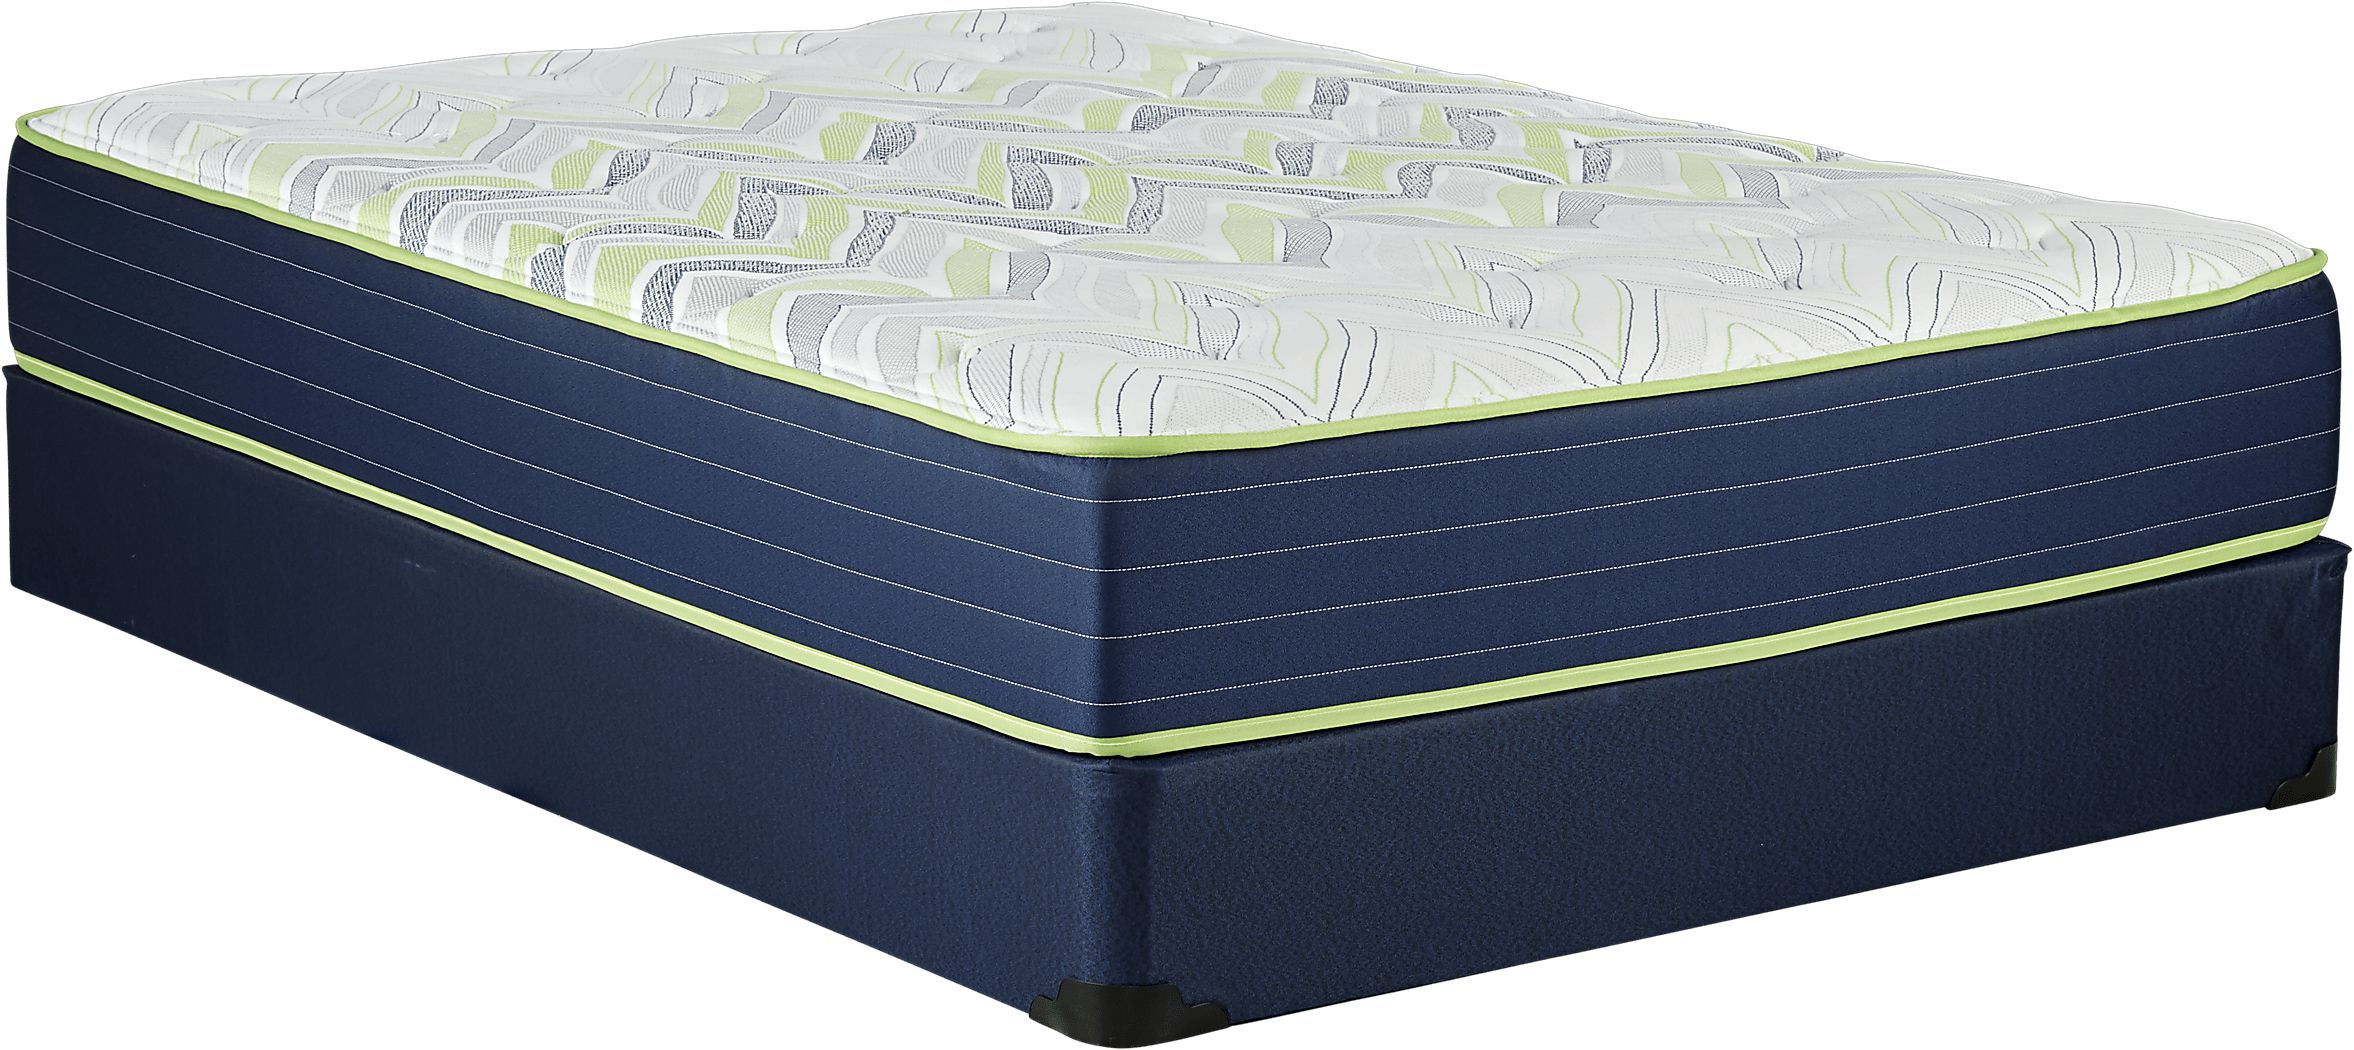 kingsdown sleeping beauty advantage mattress cost